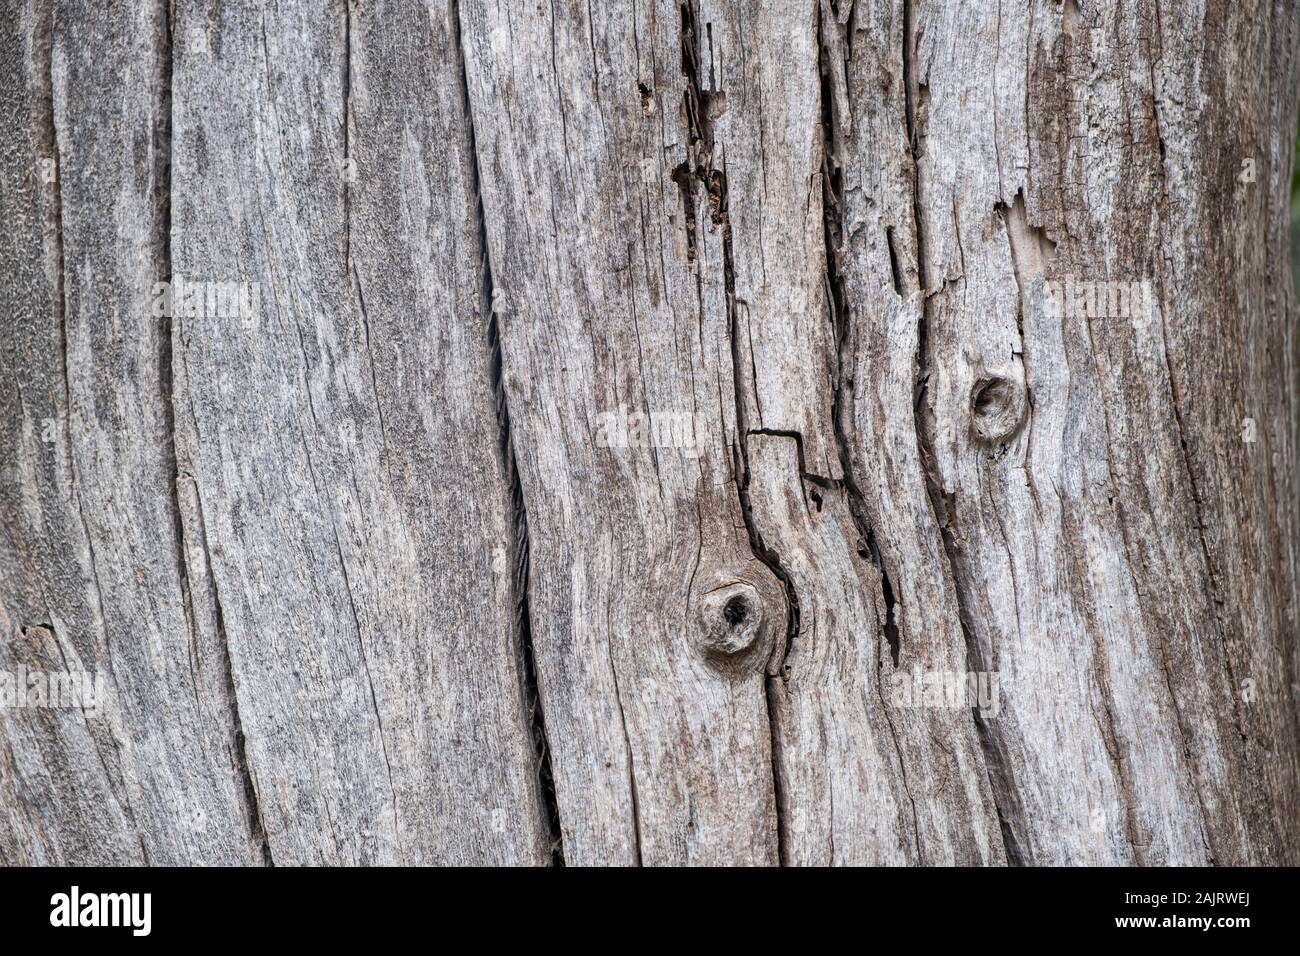 Baumstamm Holz Hintergrund, Textur. Getrocknet, tote graue Farbe Holz-  stumpf, Detailansicht Stockfotografie - Alamy